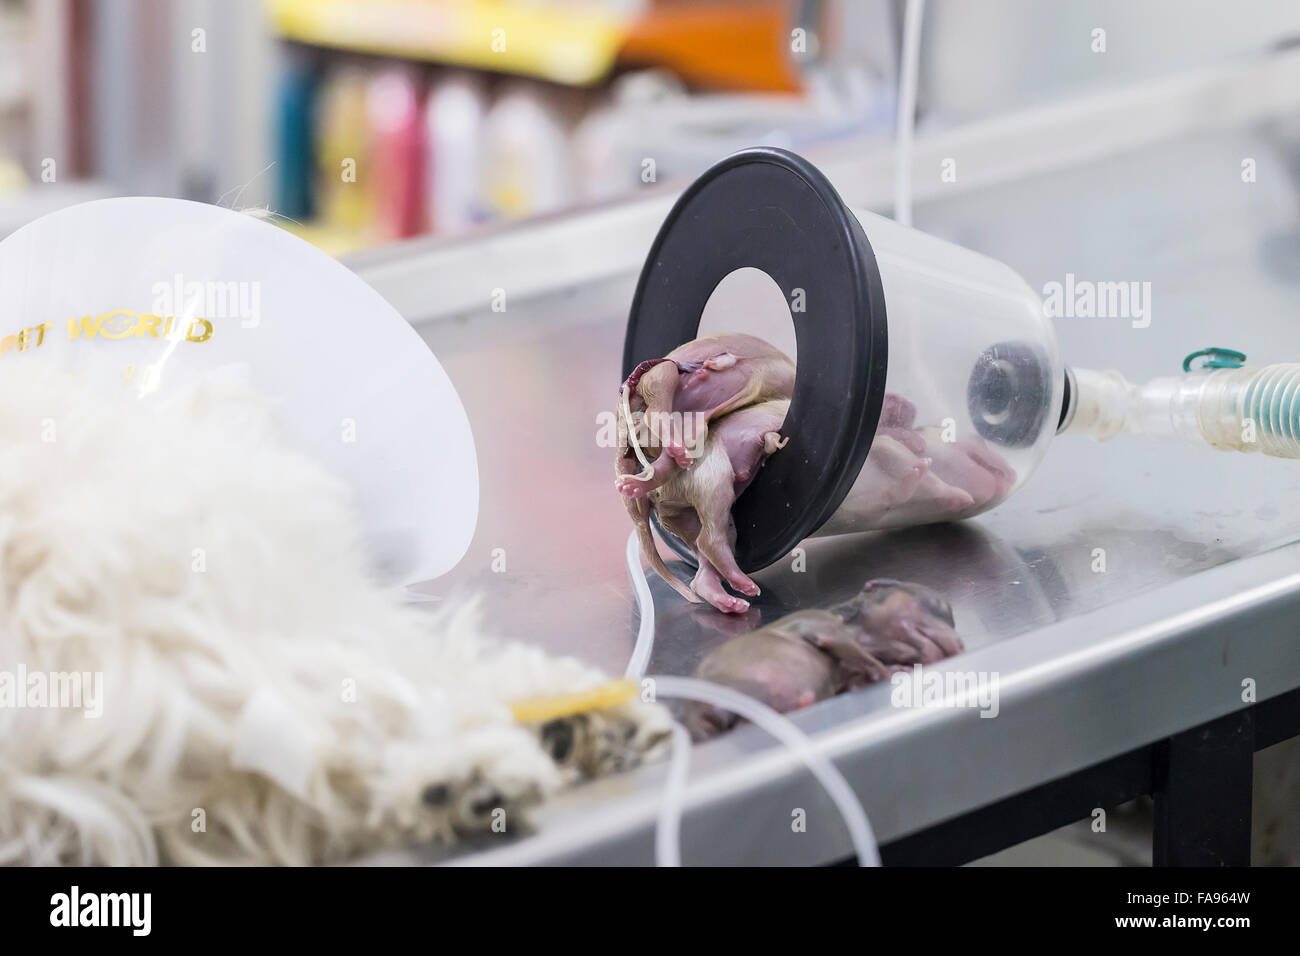 Hund das Bewusstsein verlieren nach Kaiserschnitt mit gerade geborenen  Welpen am OP-Tisch in tierärztliche Klinik Stockfotografie - Alamy